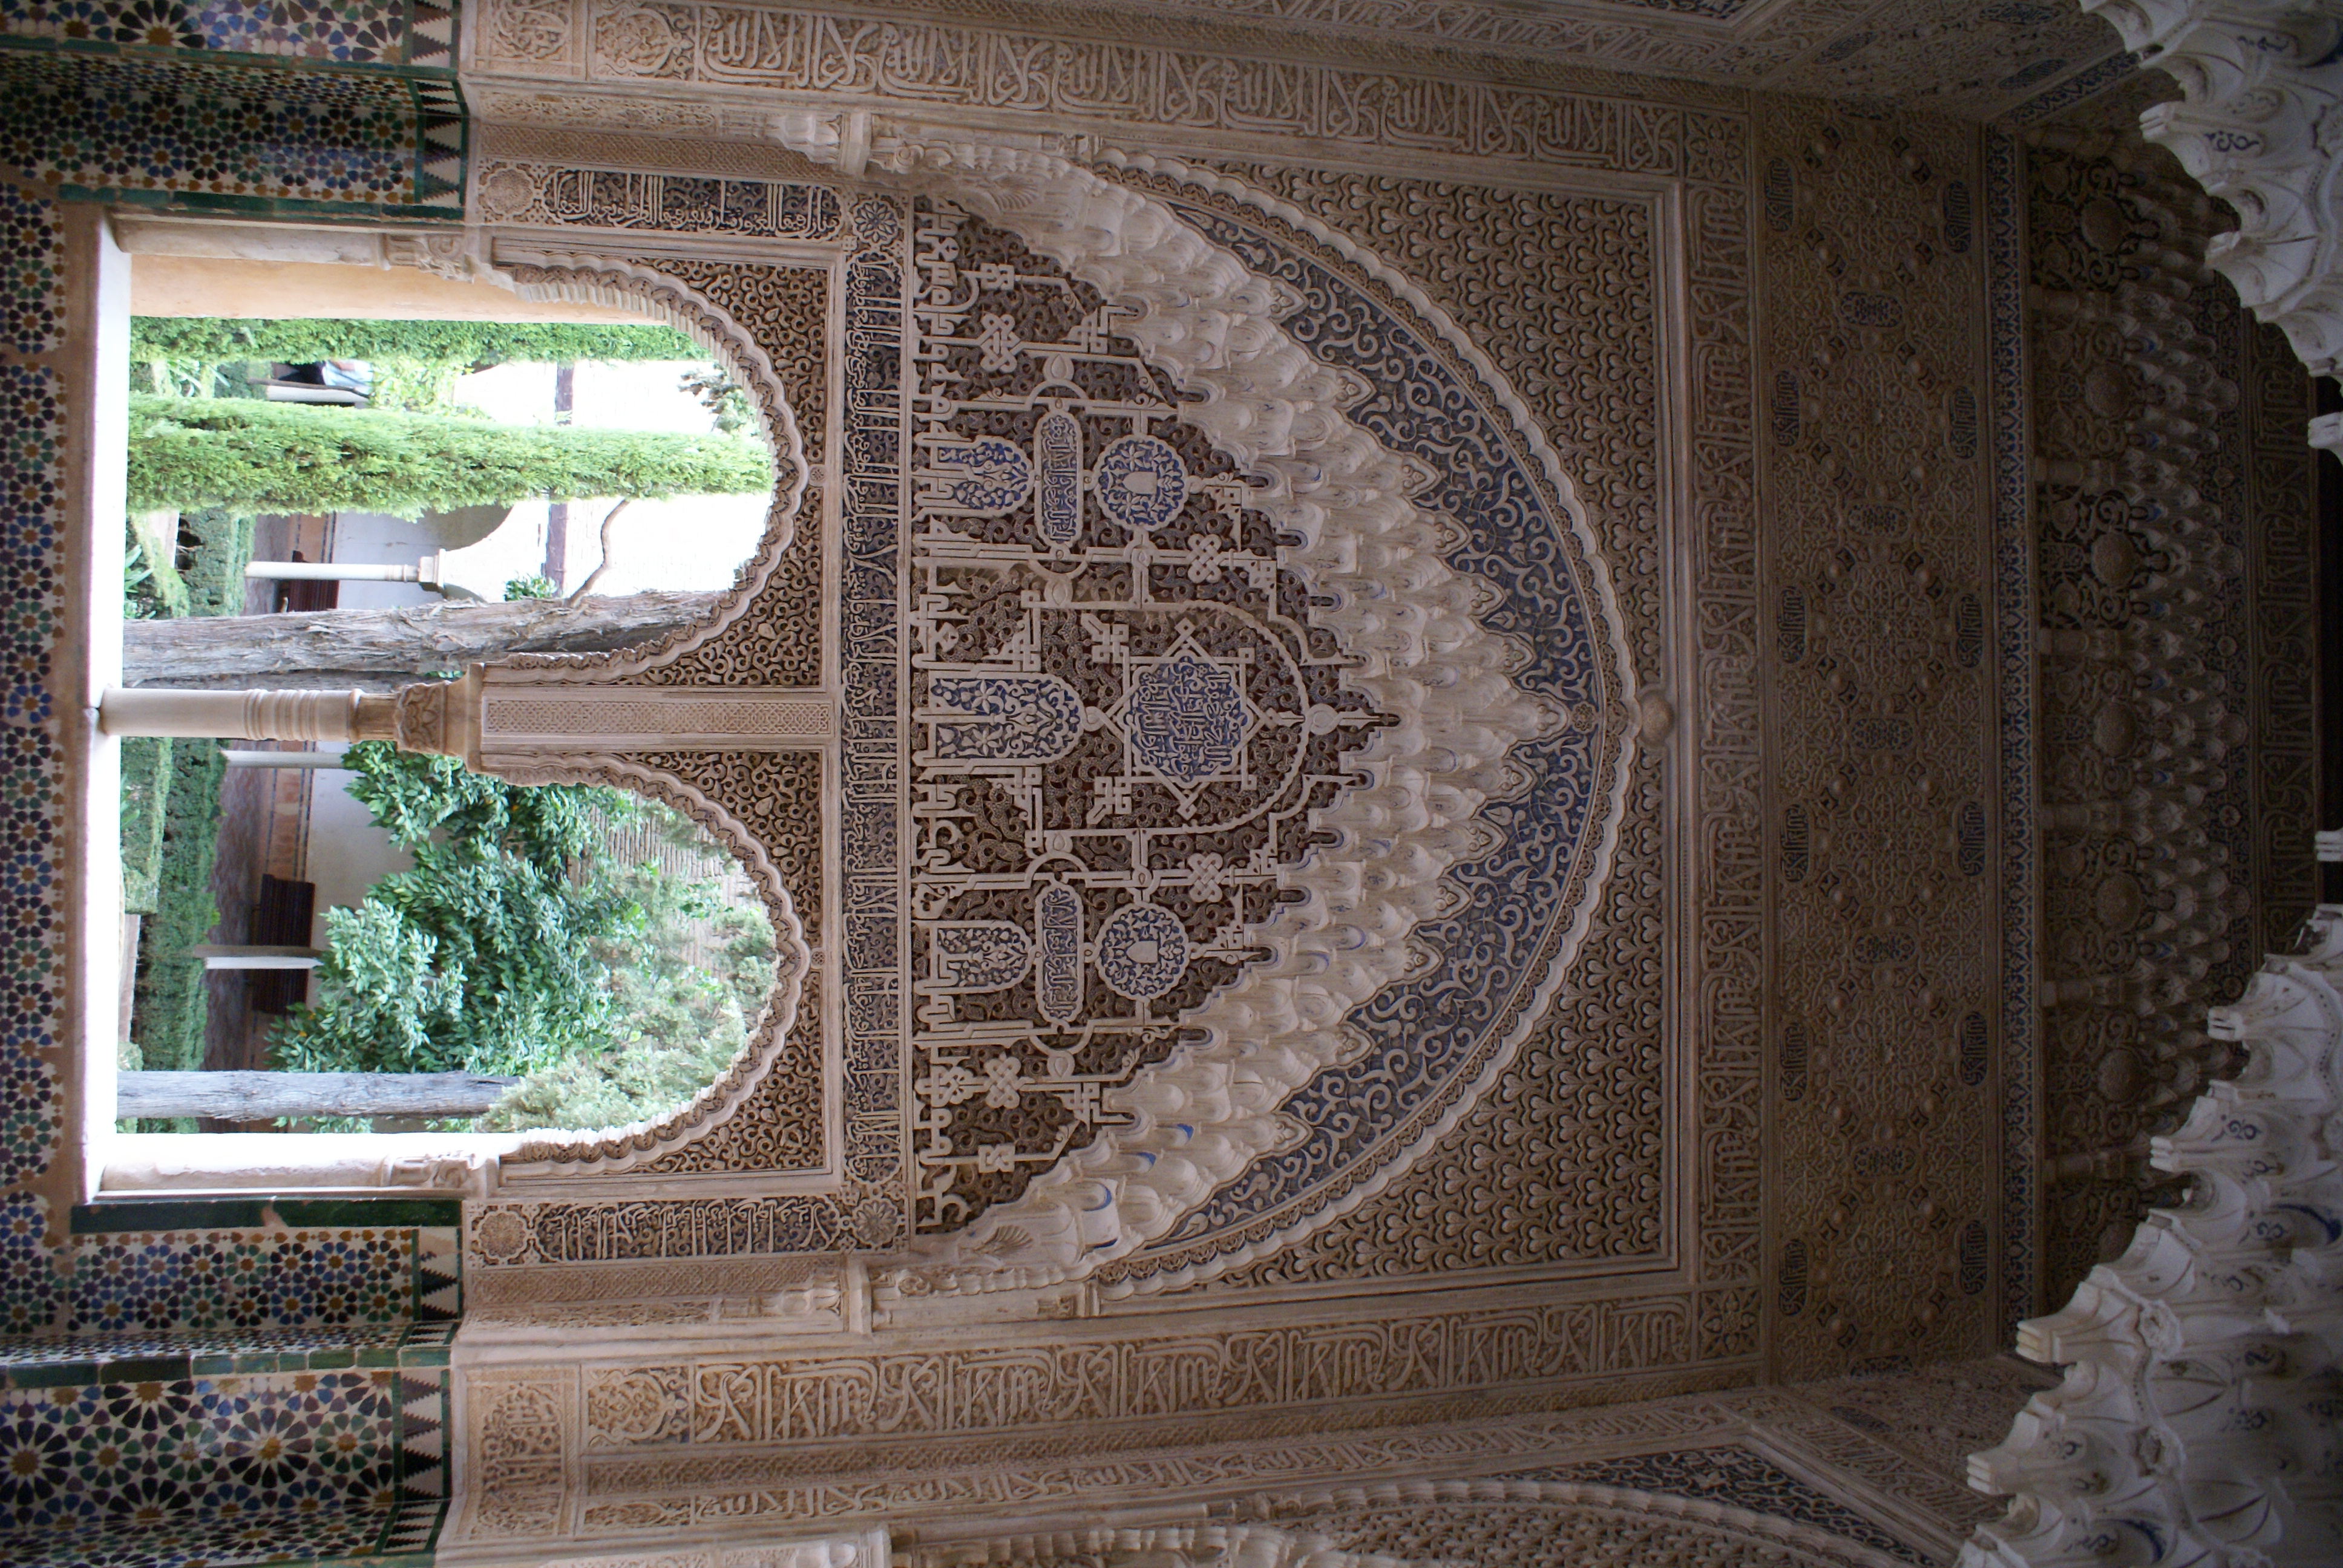 Alhambra vnitřní prostory paláce1 - Alhambra inside of palace1 